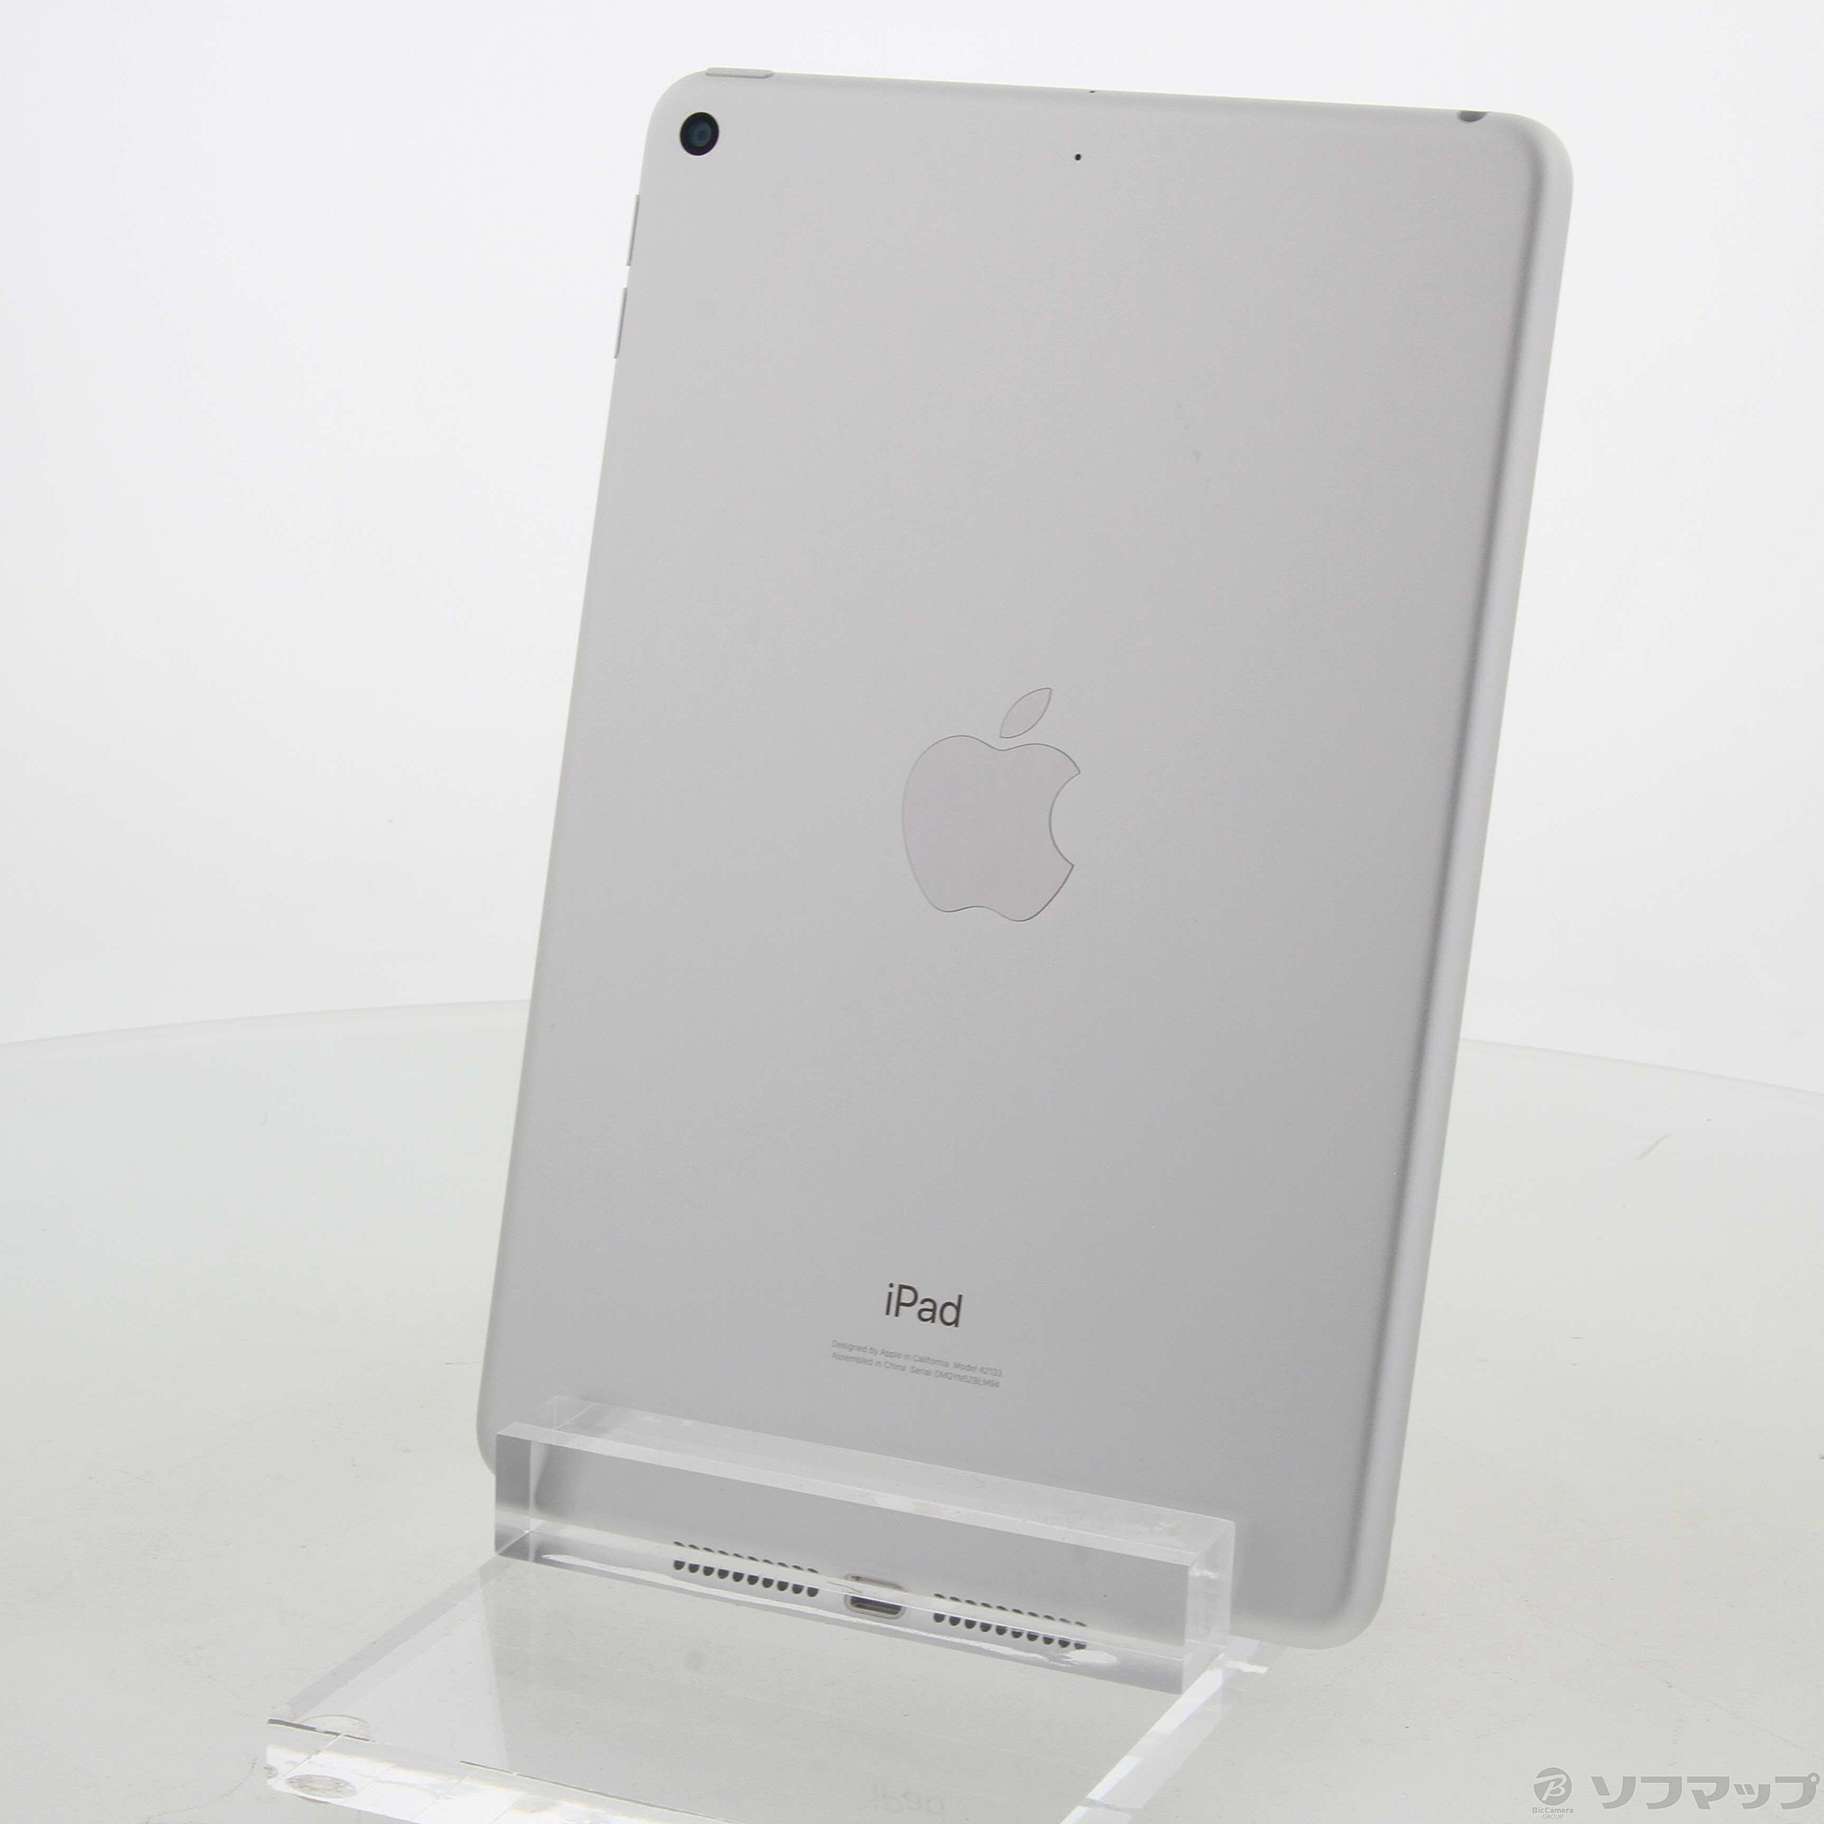 クリアランス通販 [iPad MUQW2J/A mini スペースグレイ] 64GB Wi-Fi タブレット